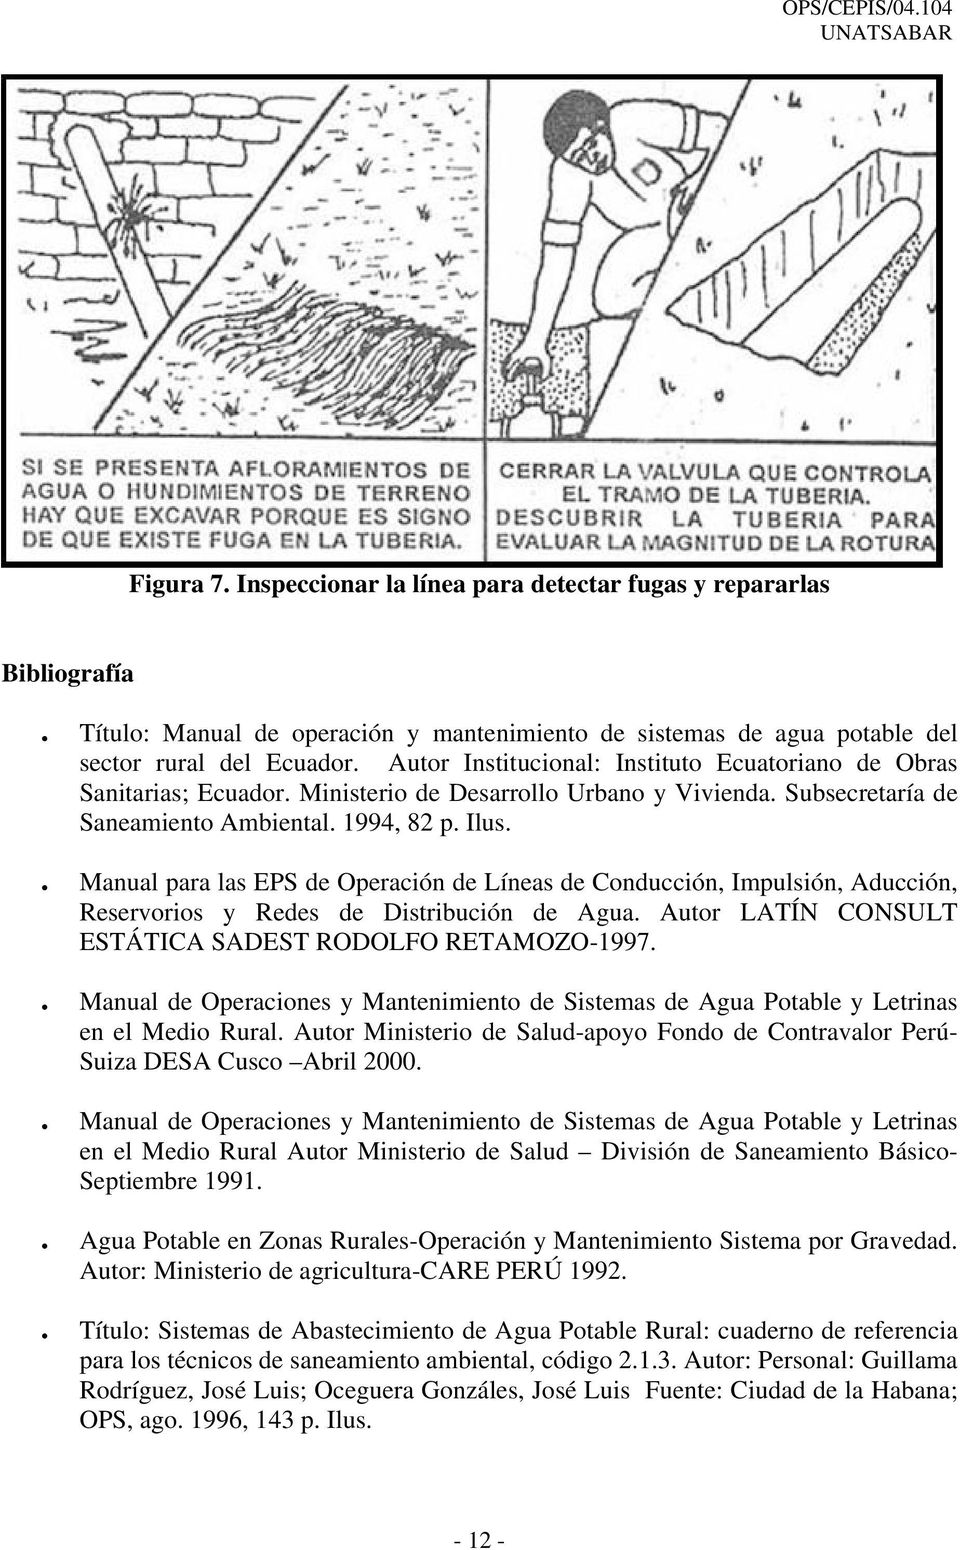 . Manual para las EPS de Operación de Líneas de Conducción, Impulsión, Aducción, Reservorios y Redes de Distribución de Agua. Autor LATÍN CONSULT ESTÁTICA SADEST RODOLFO RETAMOZO-1997.